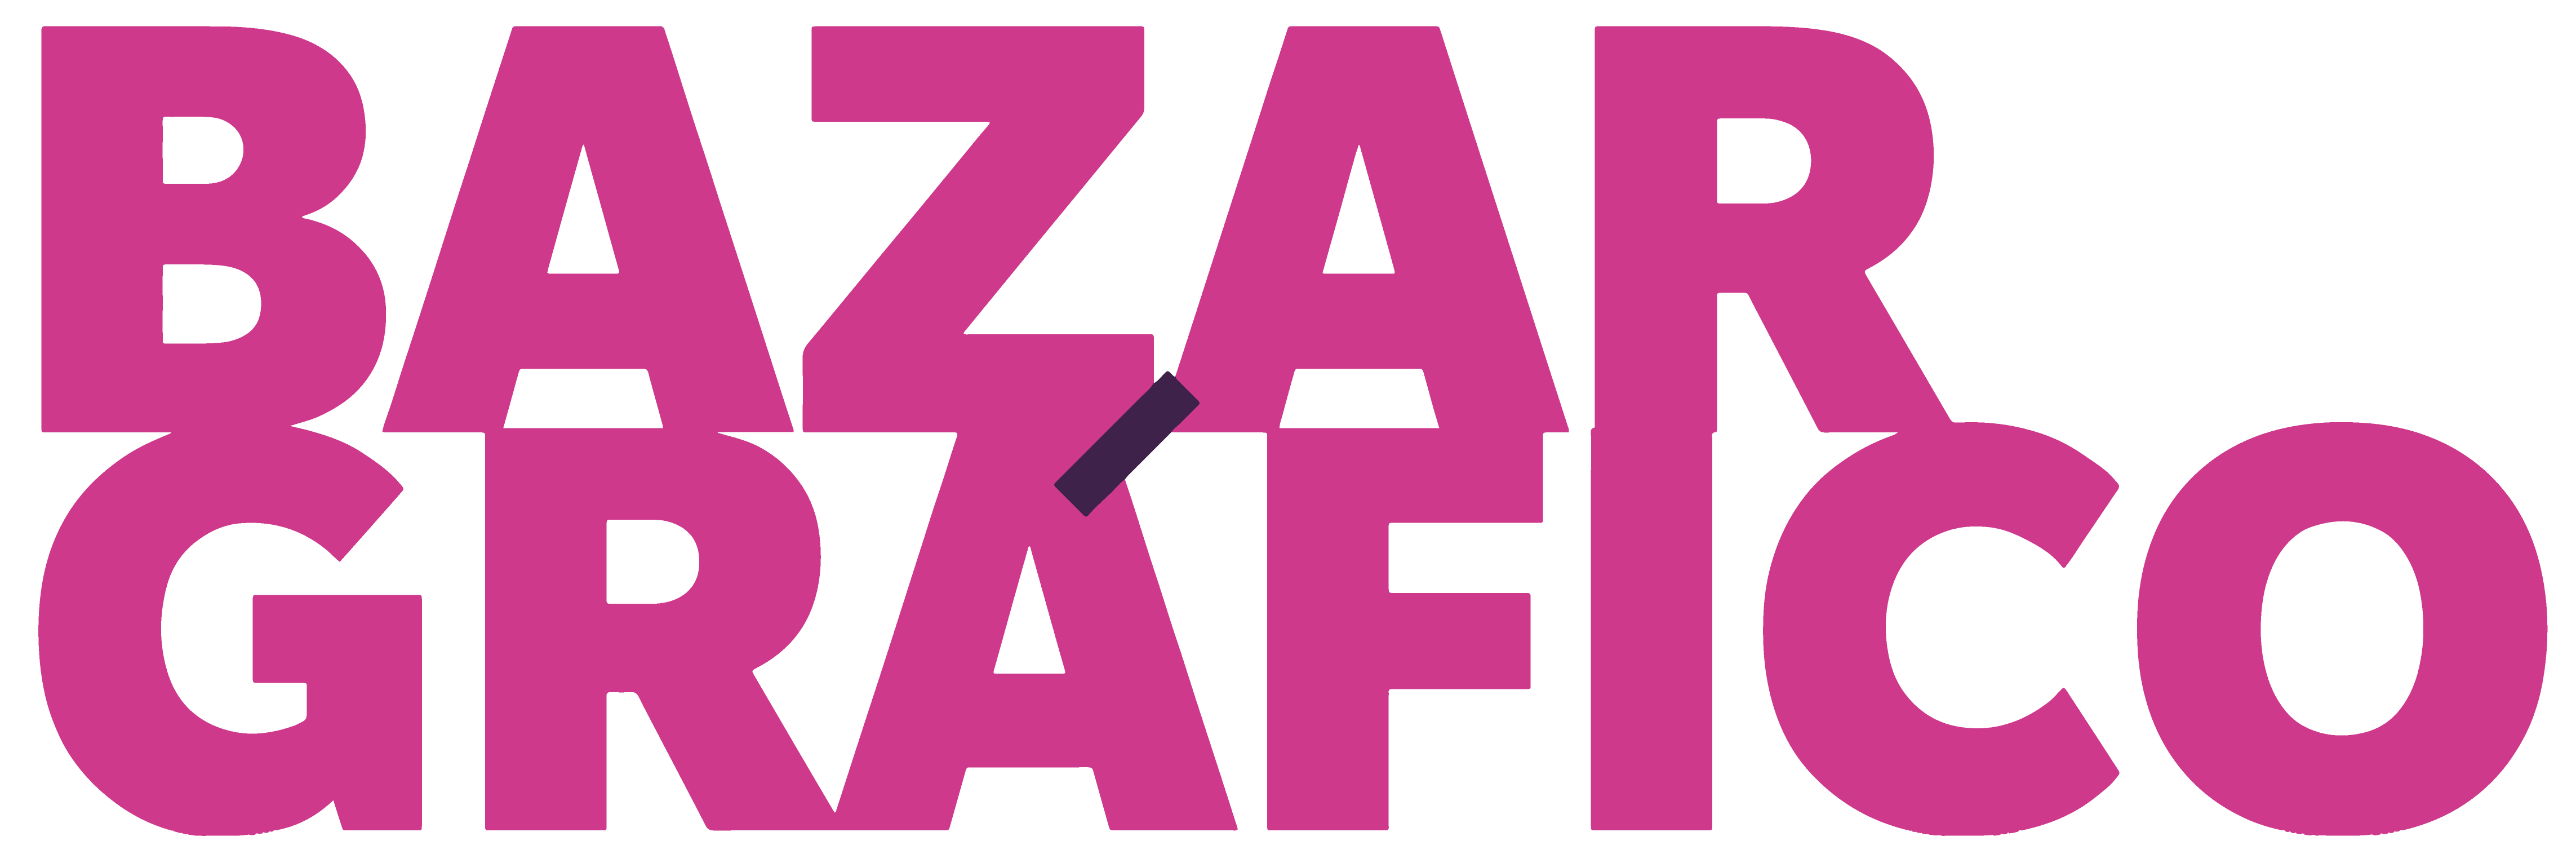 logo-bazar-2021-rosa